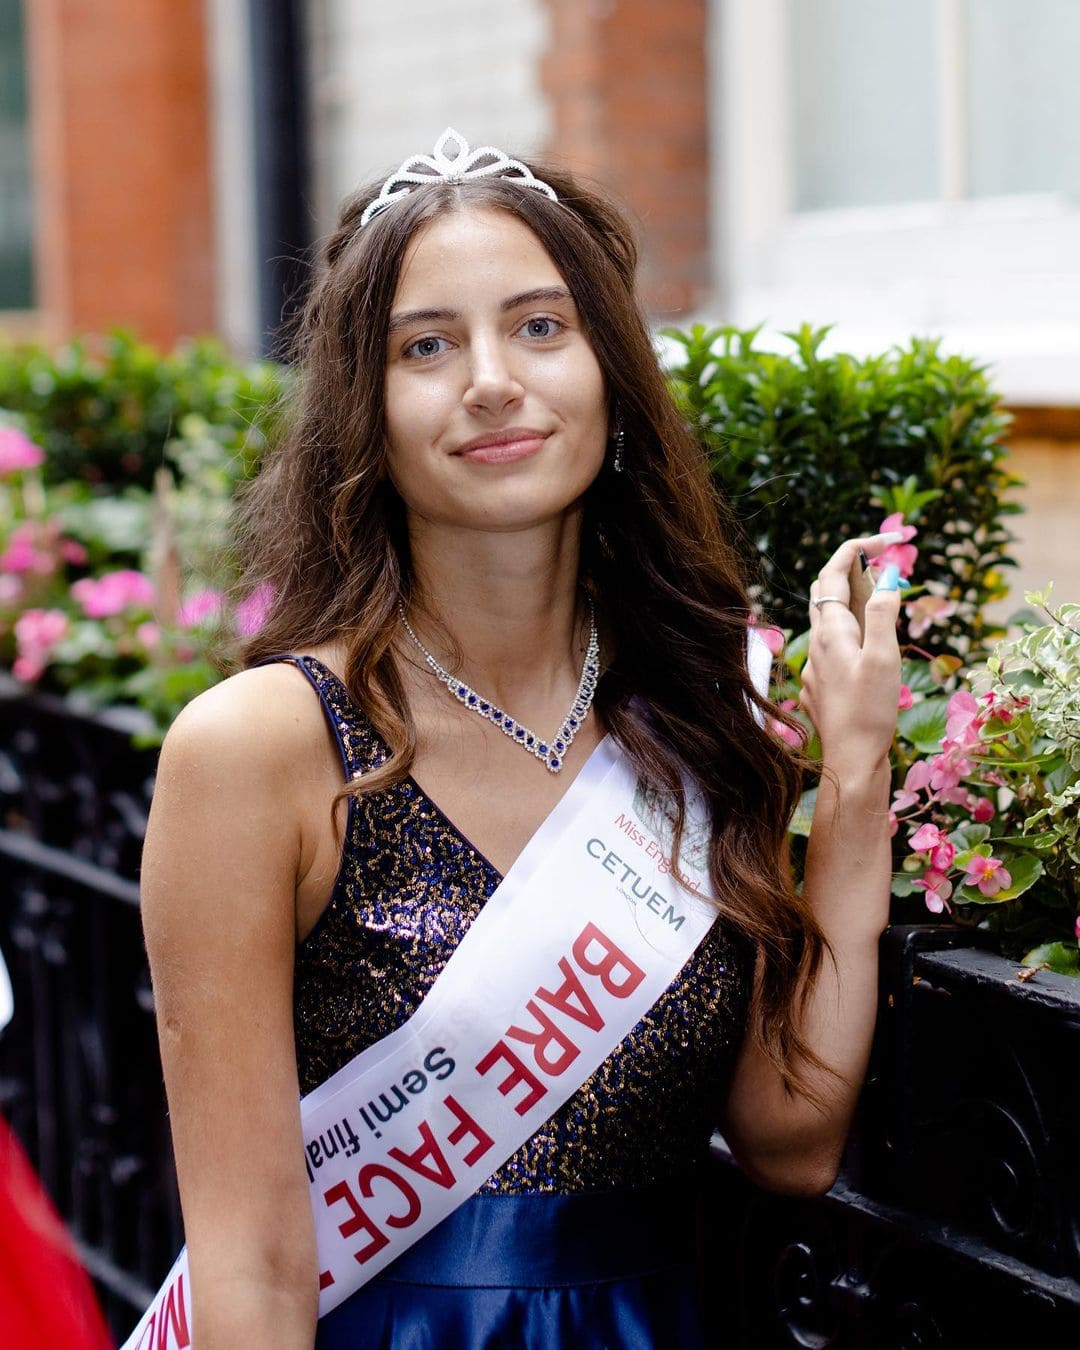 Сенсация в мире красоты, которая сподвигла людей заговорить о конкурсе «Мисс Англия» 35